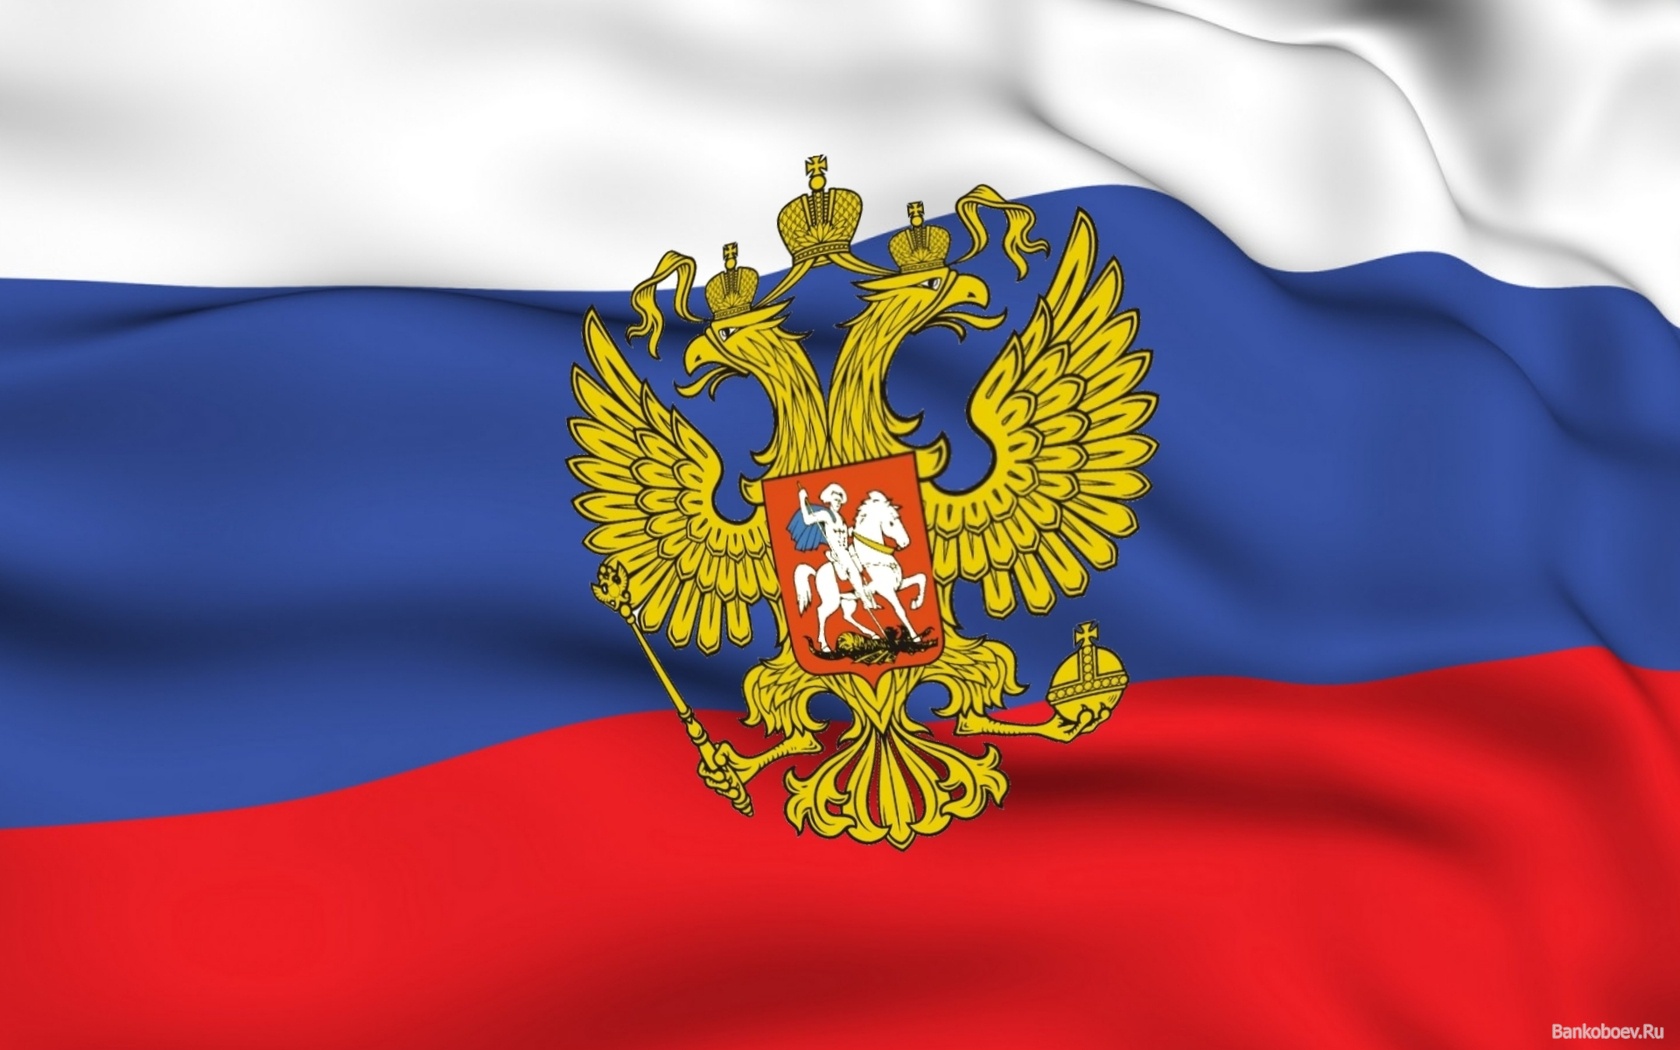 Об этом говорят: Россия в борьбе с 'бандеровцами' может запретить свой флаг